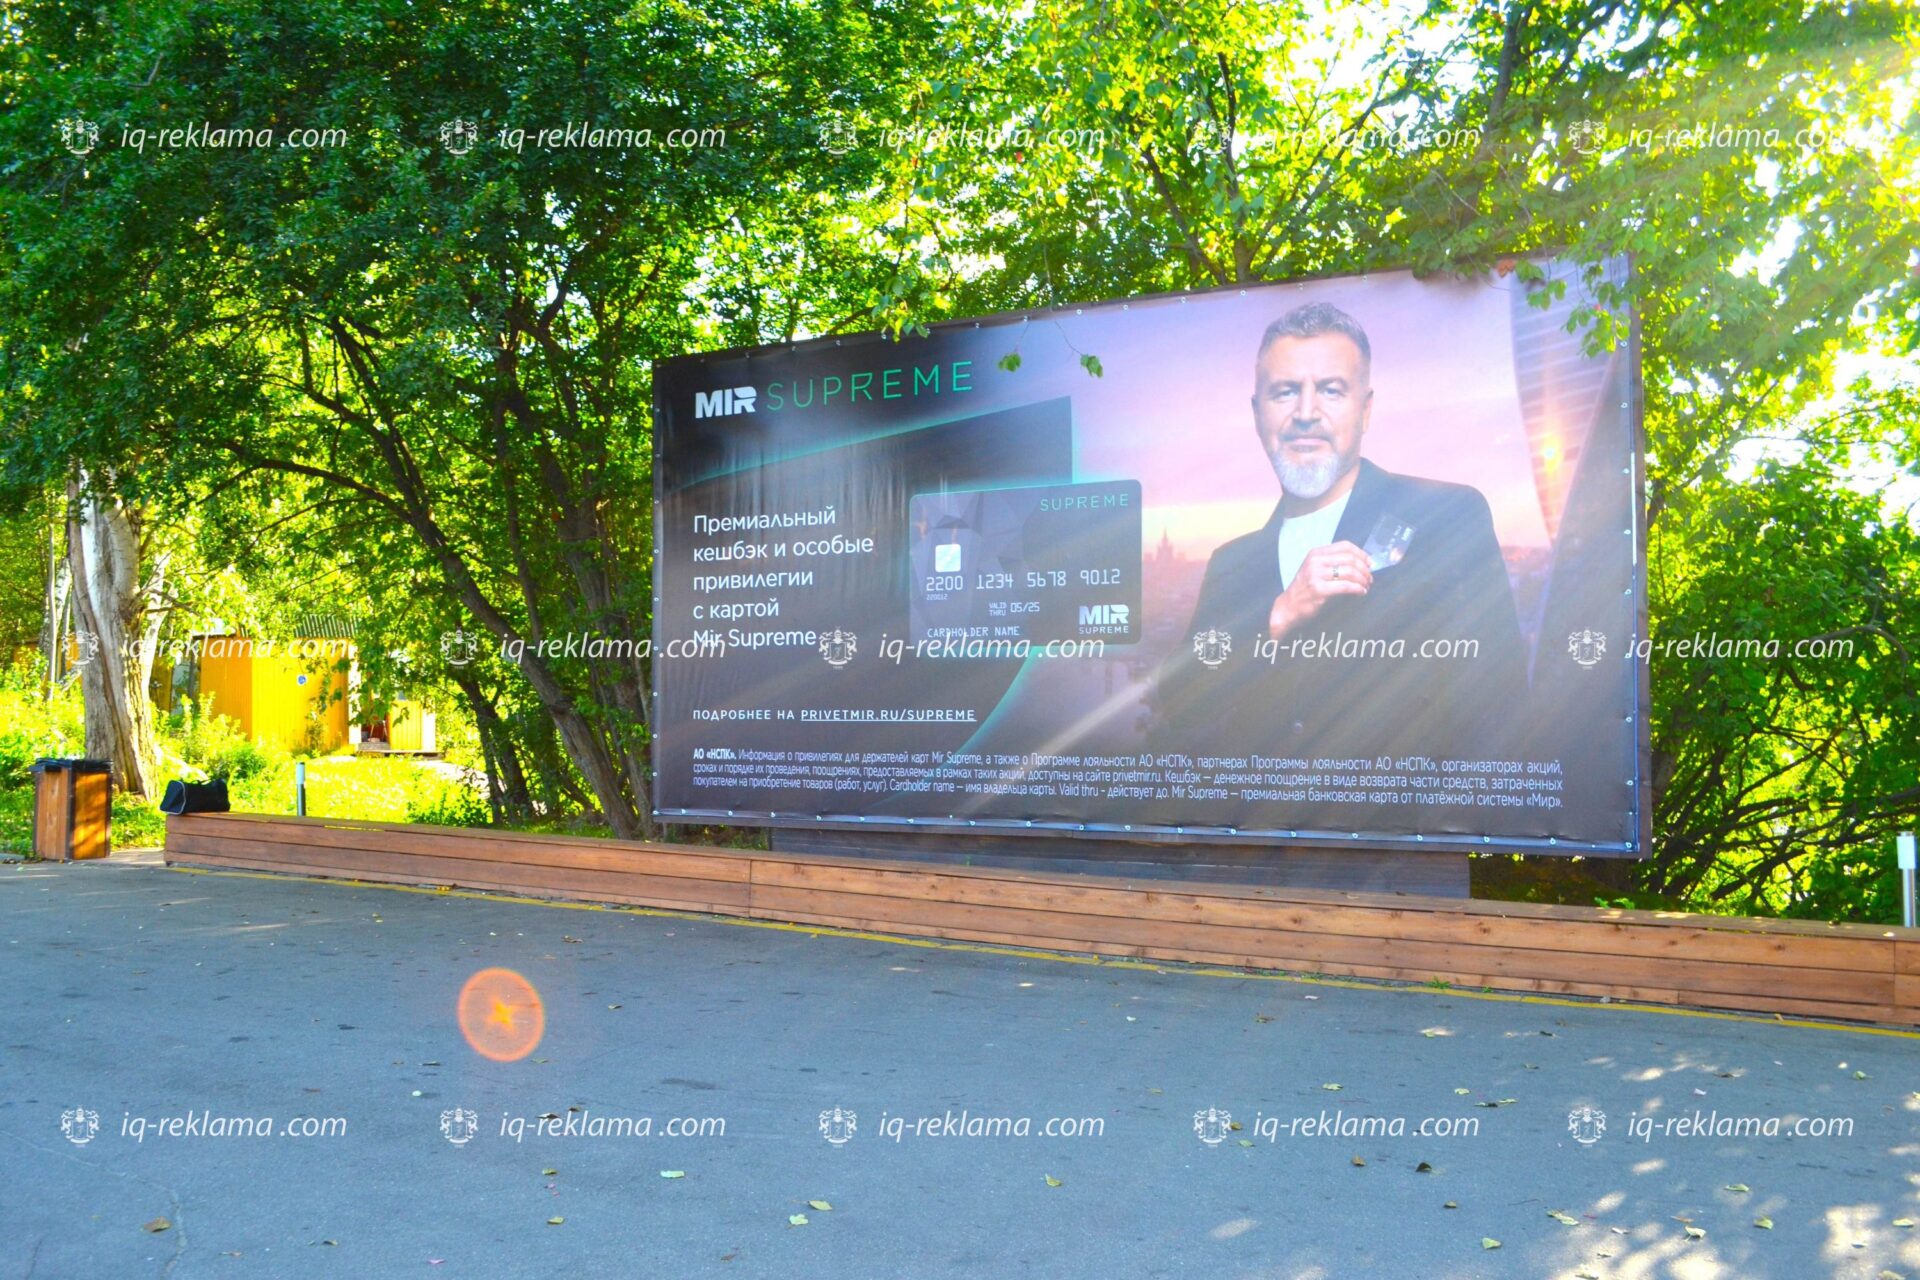 Наружная реклама НСПК «Мир Suprime» в местах элитного отдыха Москвы и Санкт-Петербурга